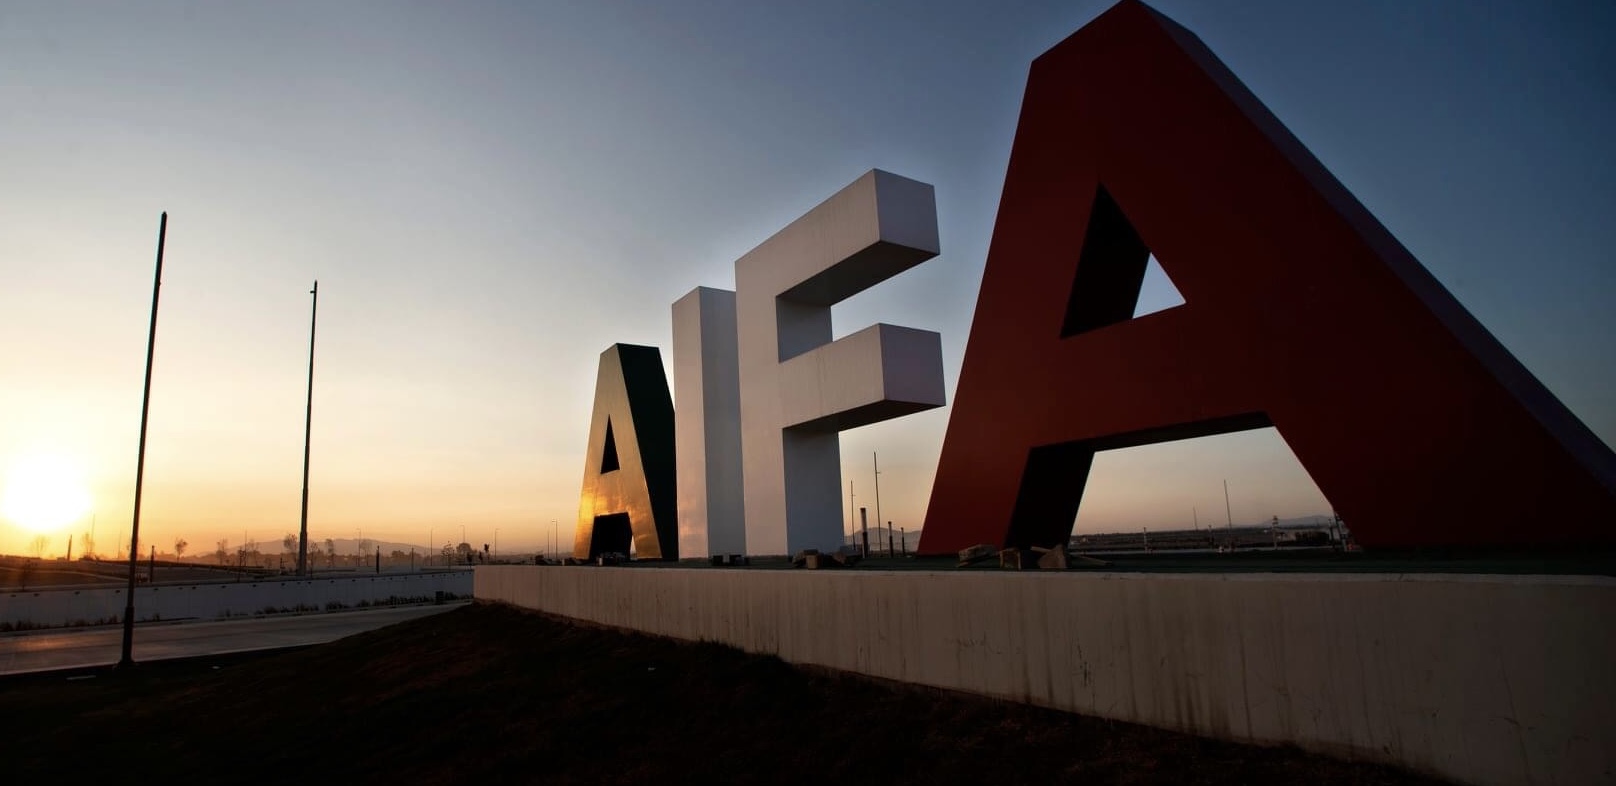 El Aeropuerto Internacional Felipe Ángeles (AIFA) estrenó cuenta de Twitter previo a su inauguración.